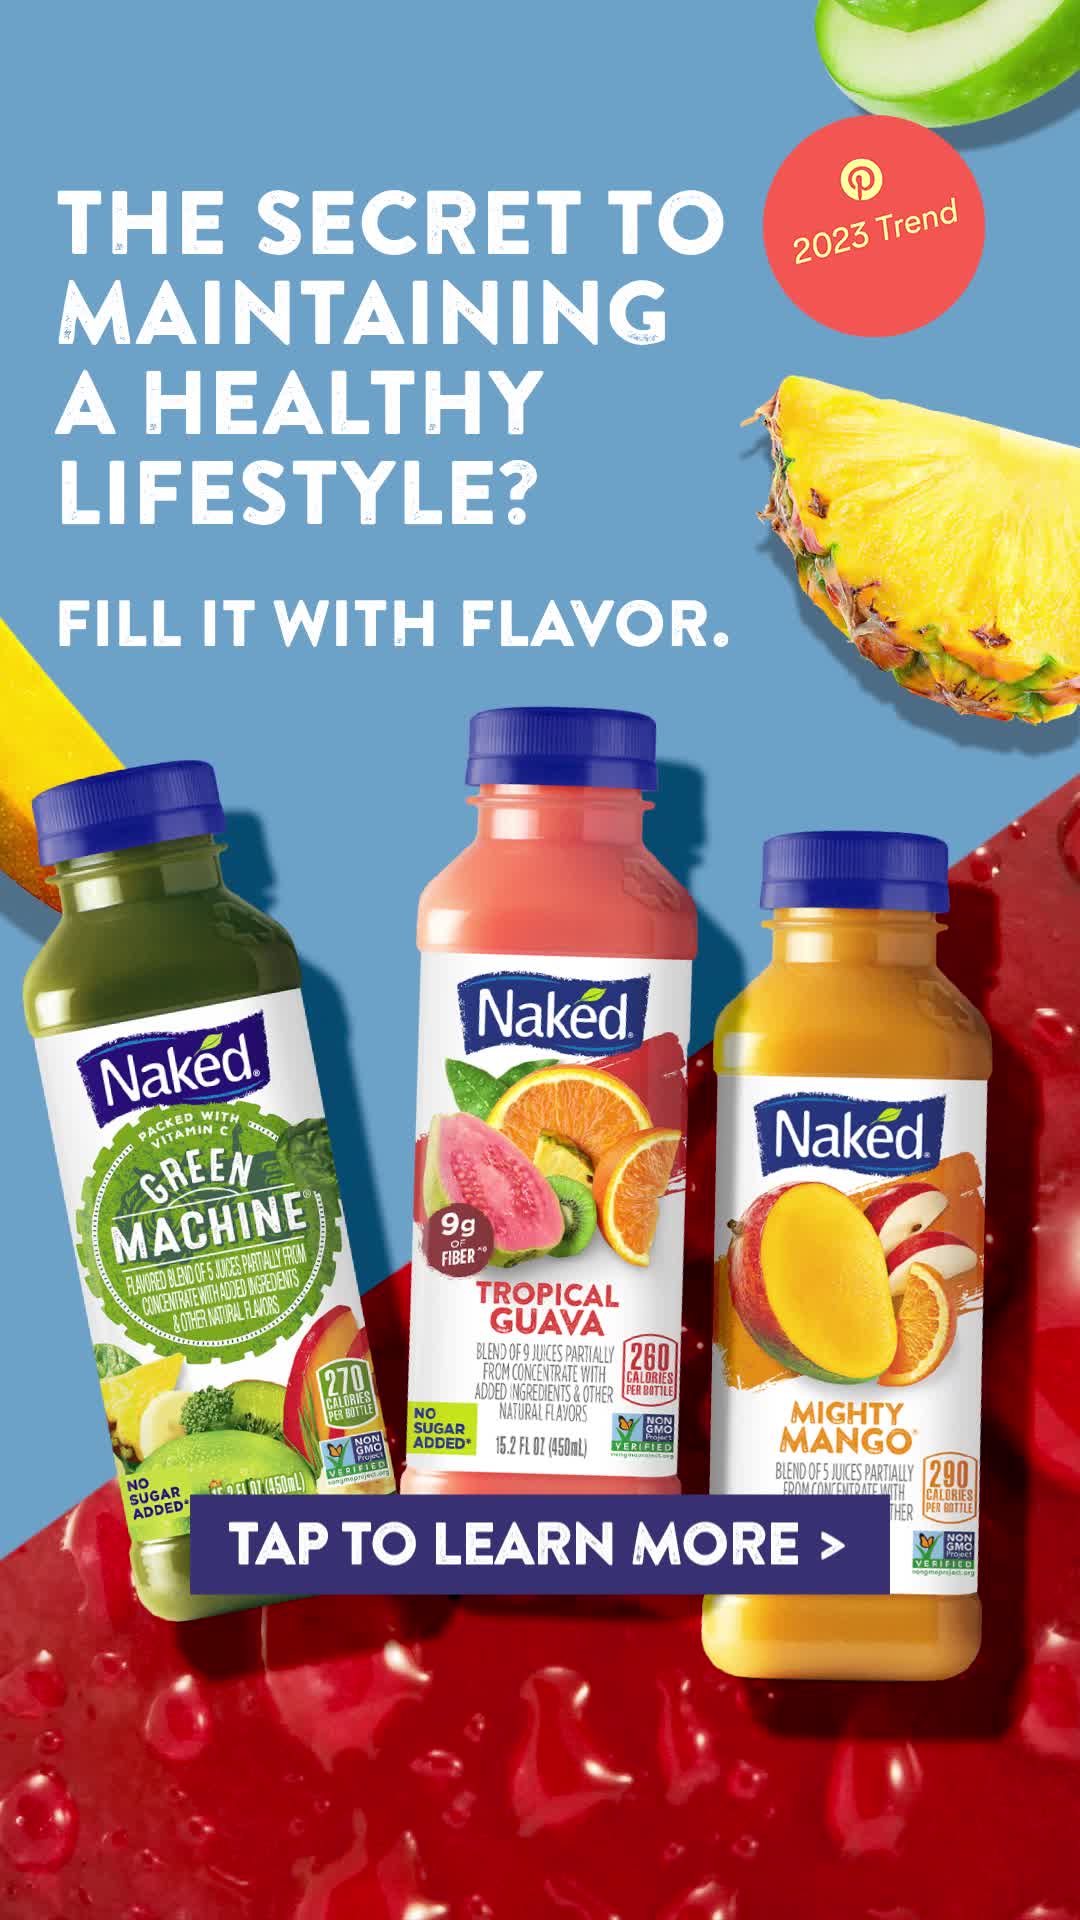 Naked Juice / Naked Juice Q1'23